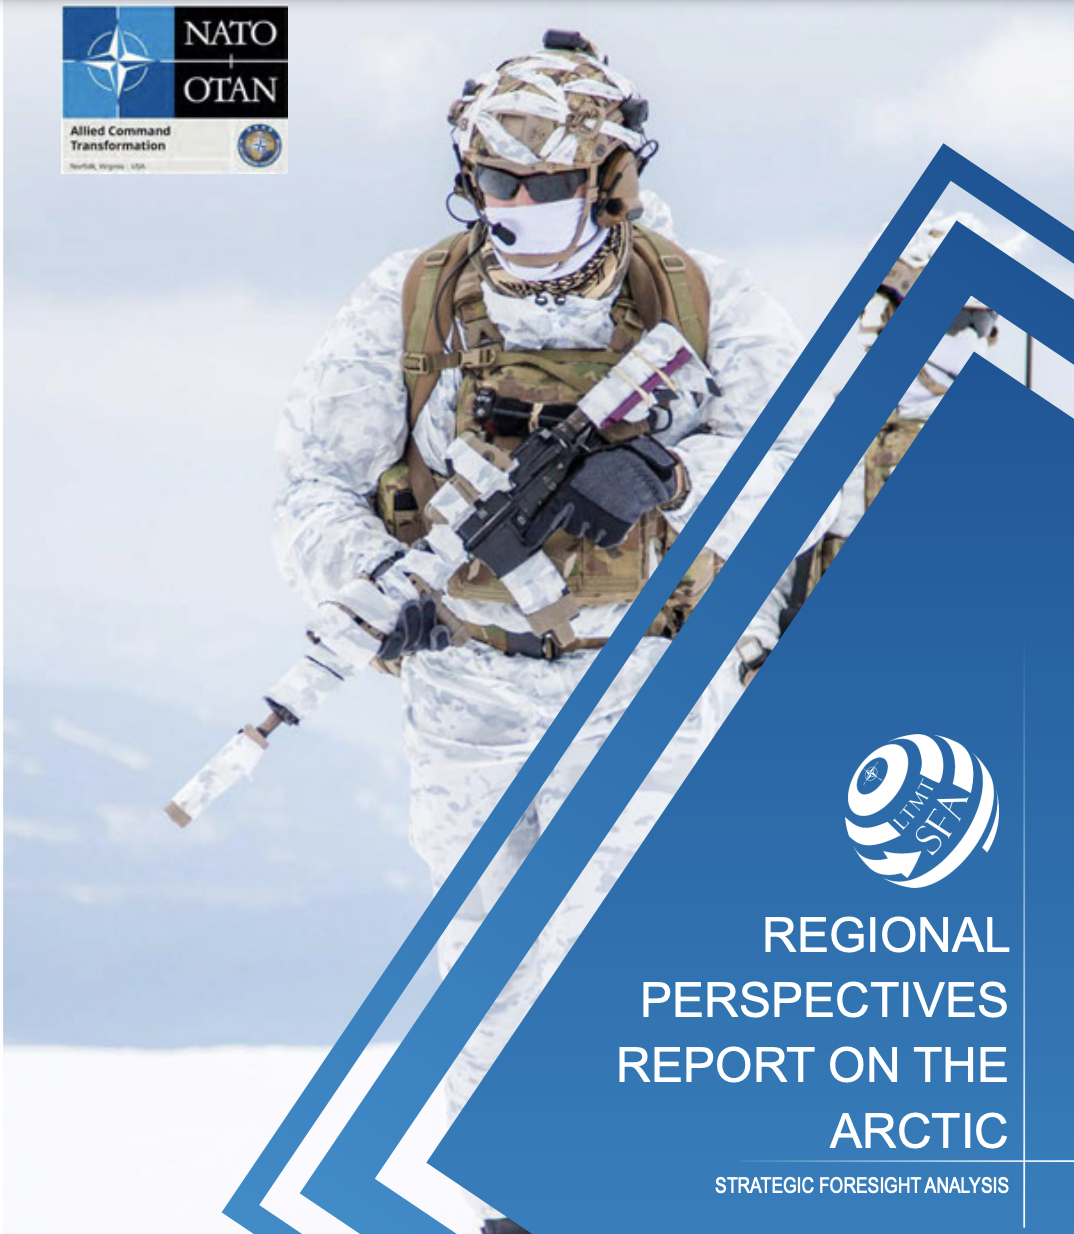 Skjermdump av NATOs rapport “Regional Perspectives Report on the Arctic” fra 2021.